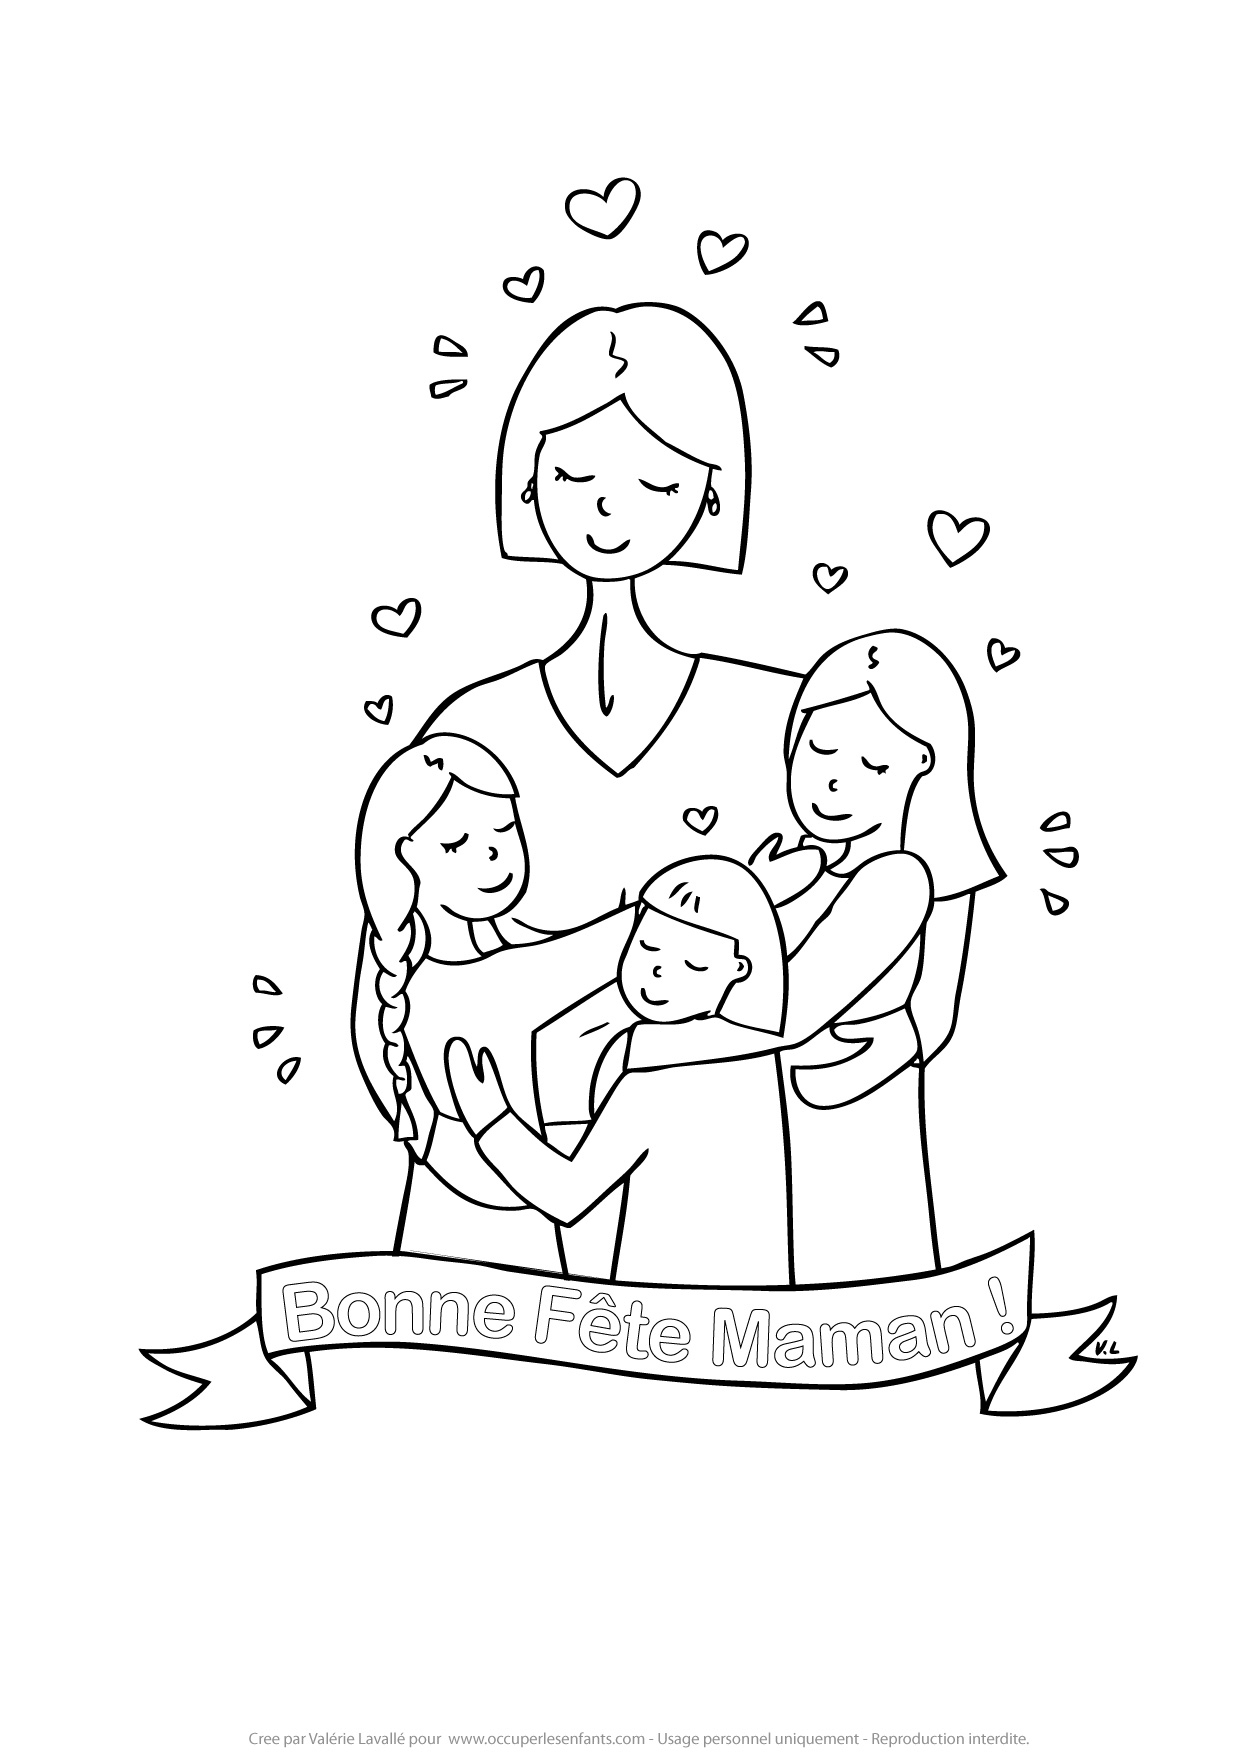 Coloriage Bonne Fete Maman De 3 Filles - Occuper Les Enfants serapportantà Bonne Fete Maman Coloriage